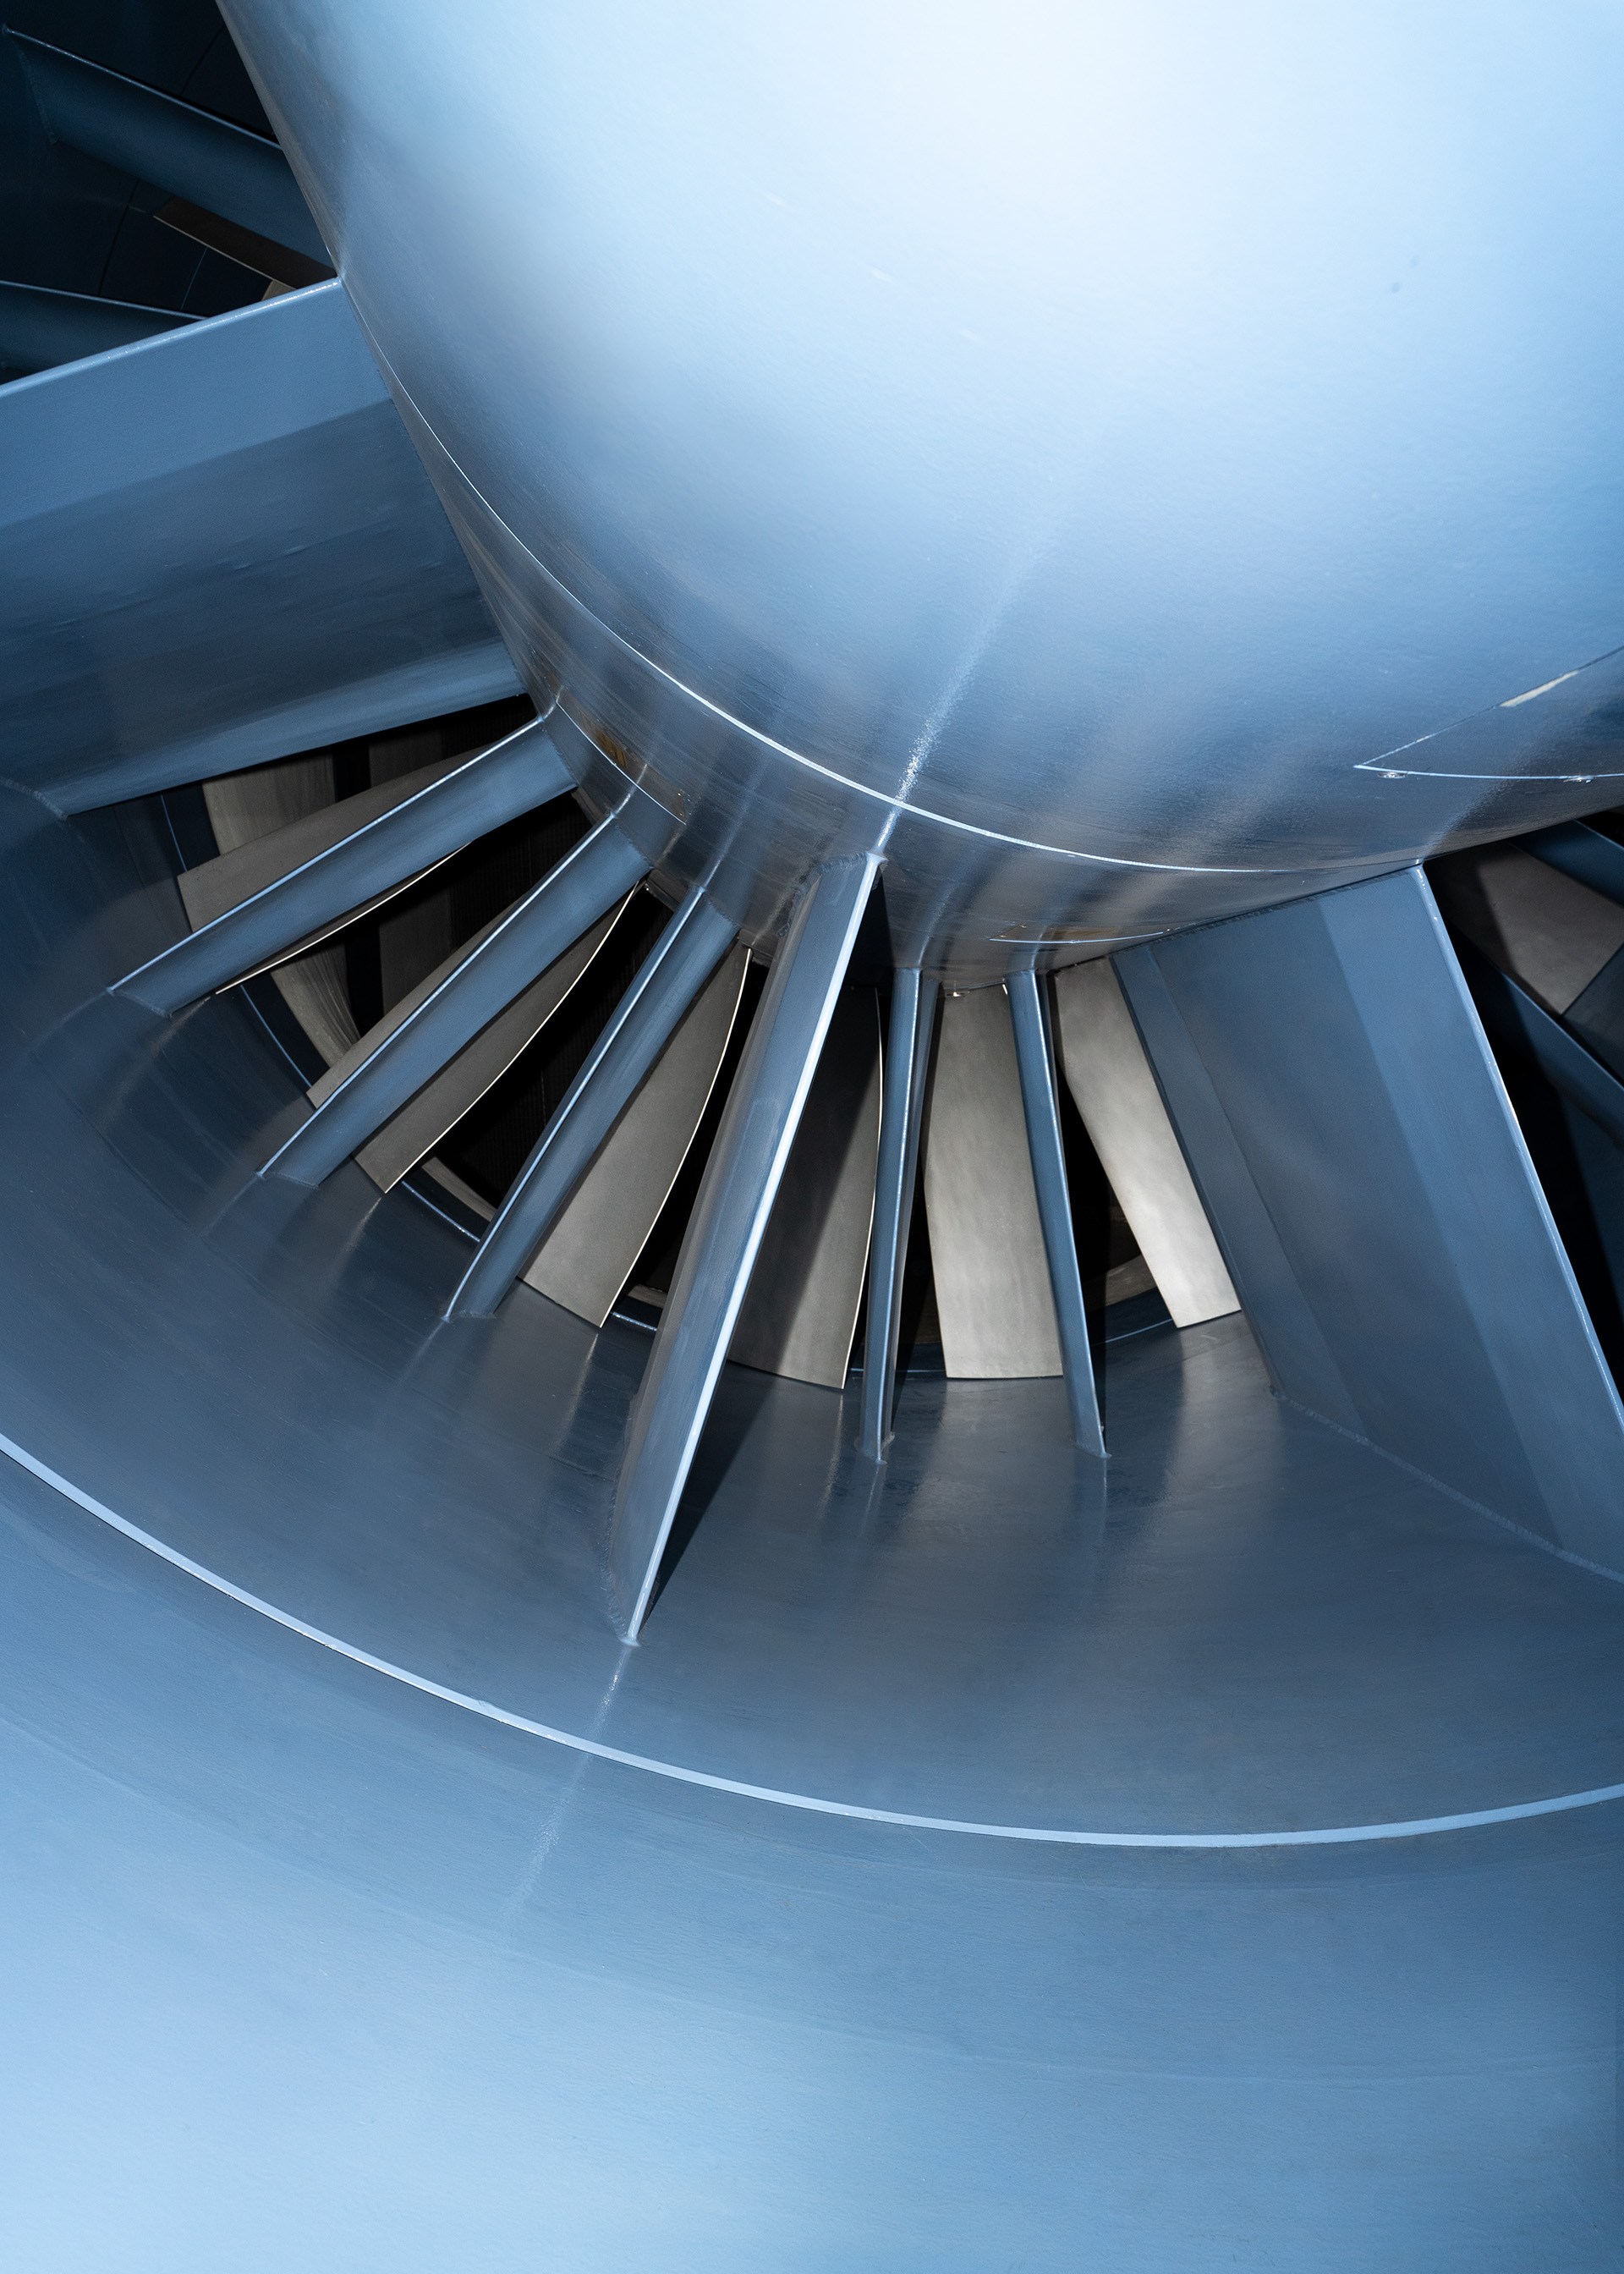 Rüzgâr tünelinin fanı 2.720 kW'a kadar güç tüketimine sahiptir.